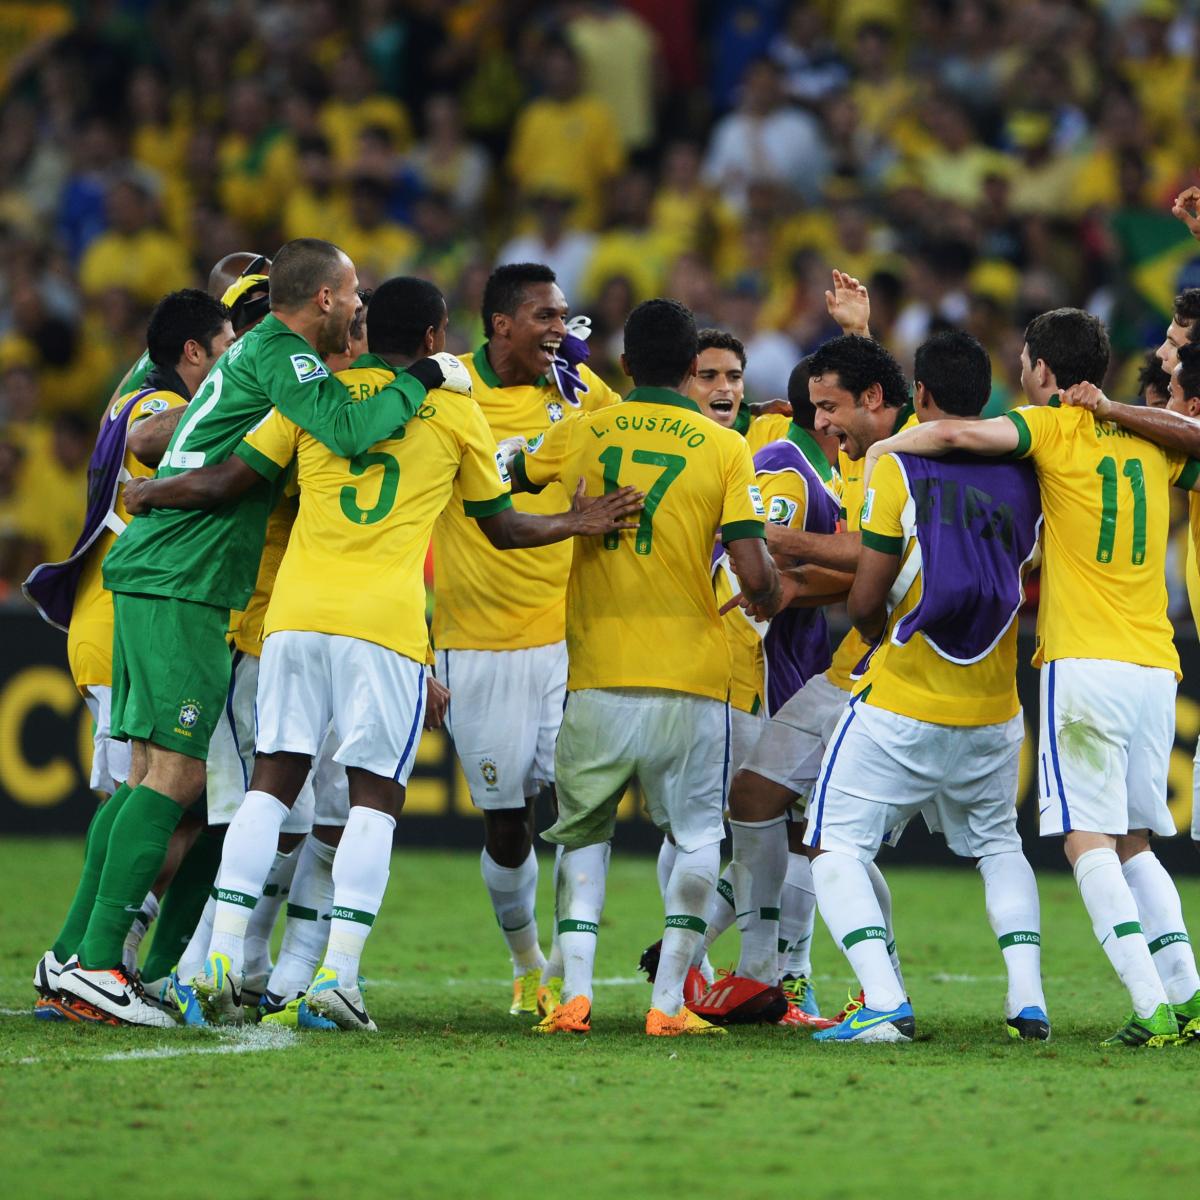 Brazil FIFA 2014 World Cup Team Guide | Bleacher Report ...
